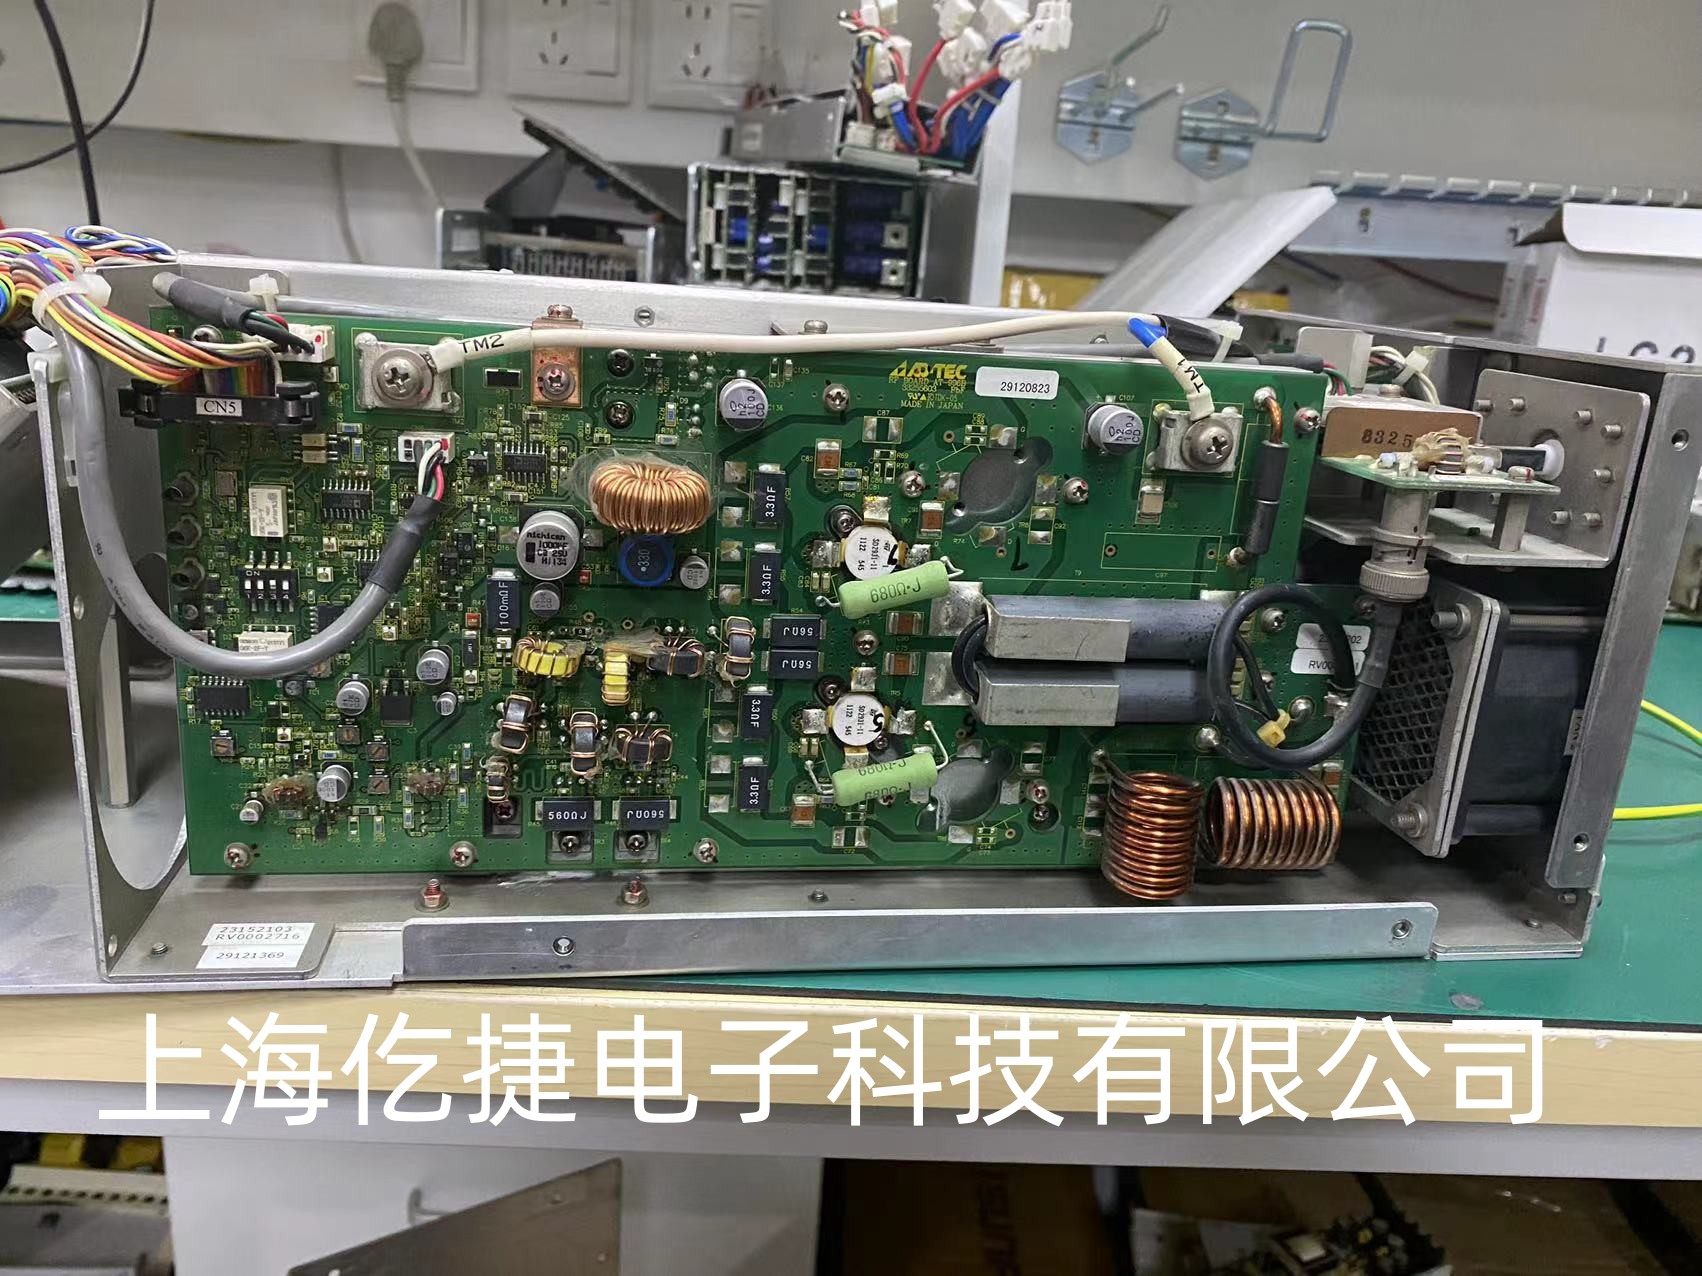 AD-TEC  型号AX-1000射频电源报警故障维修